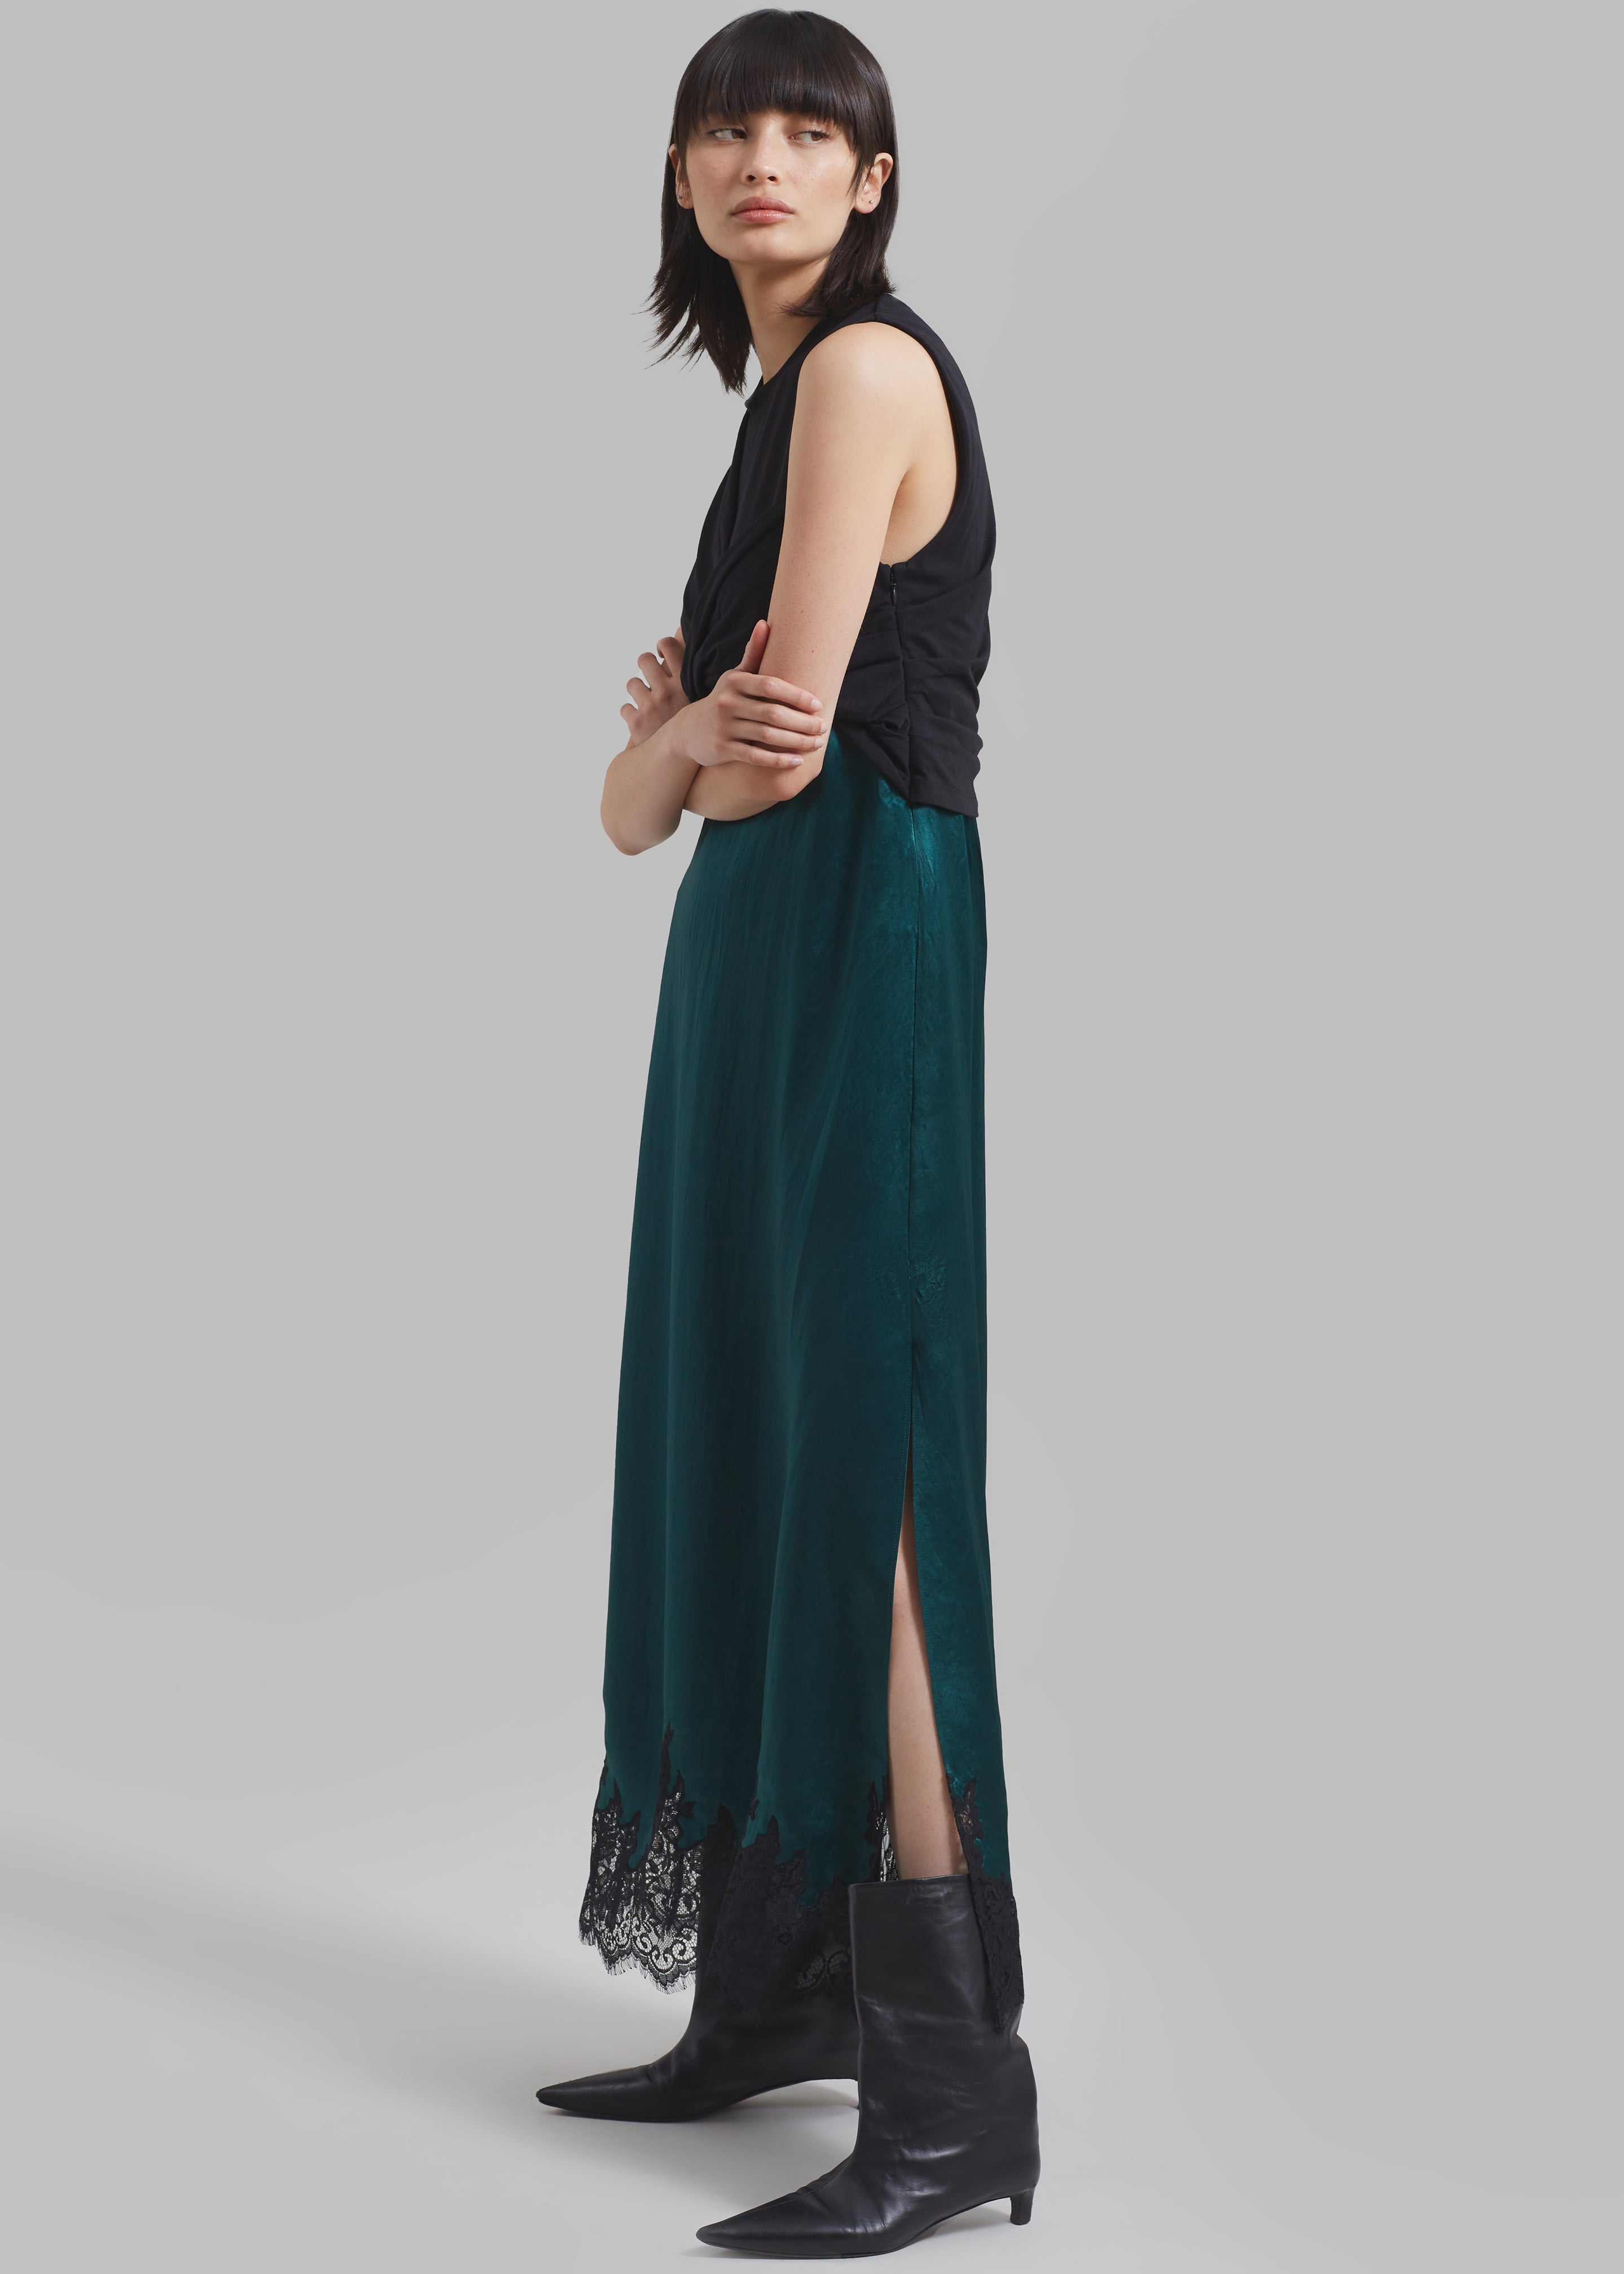 3.1 Phillip Lim Twist Tank Slip Dress - Black/Emerald - 4